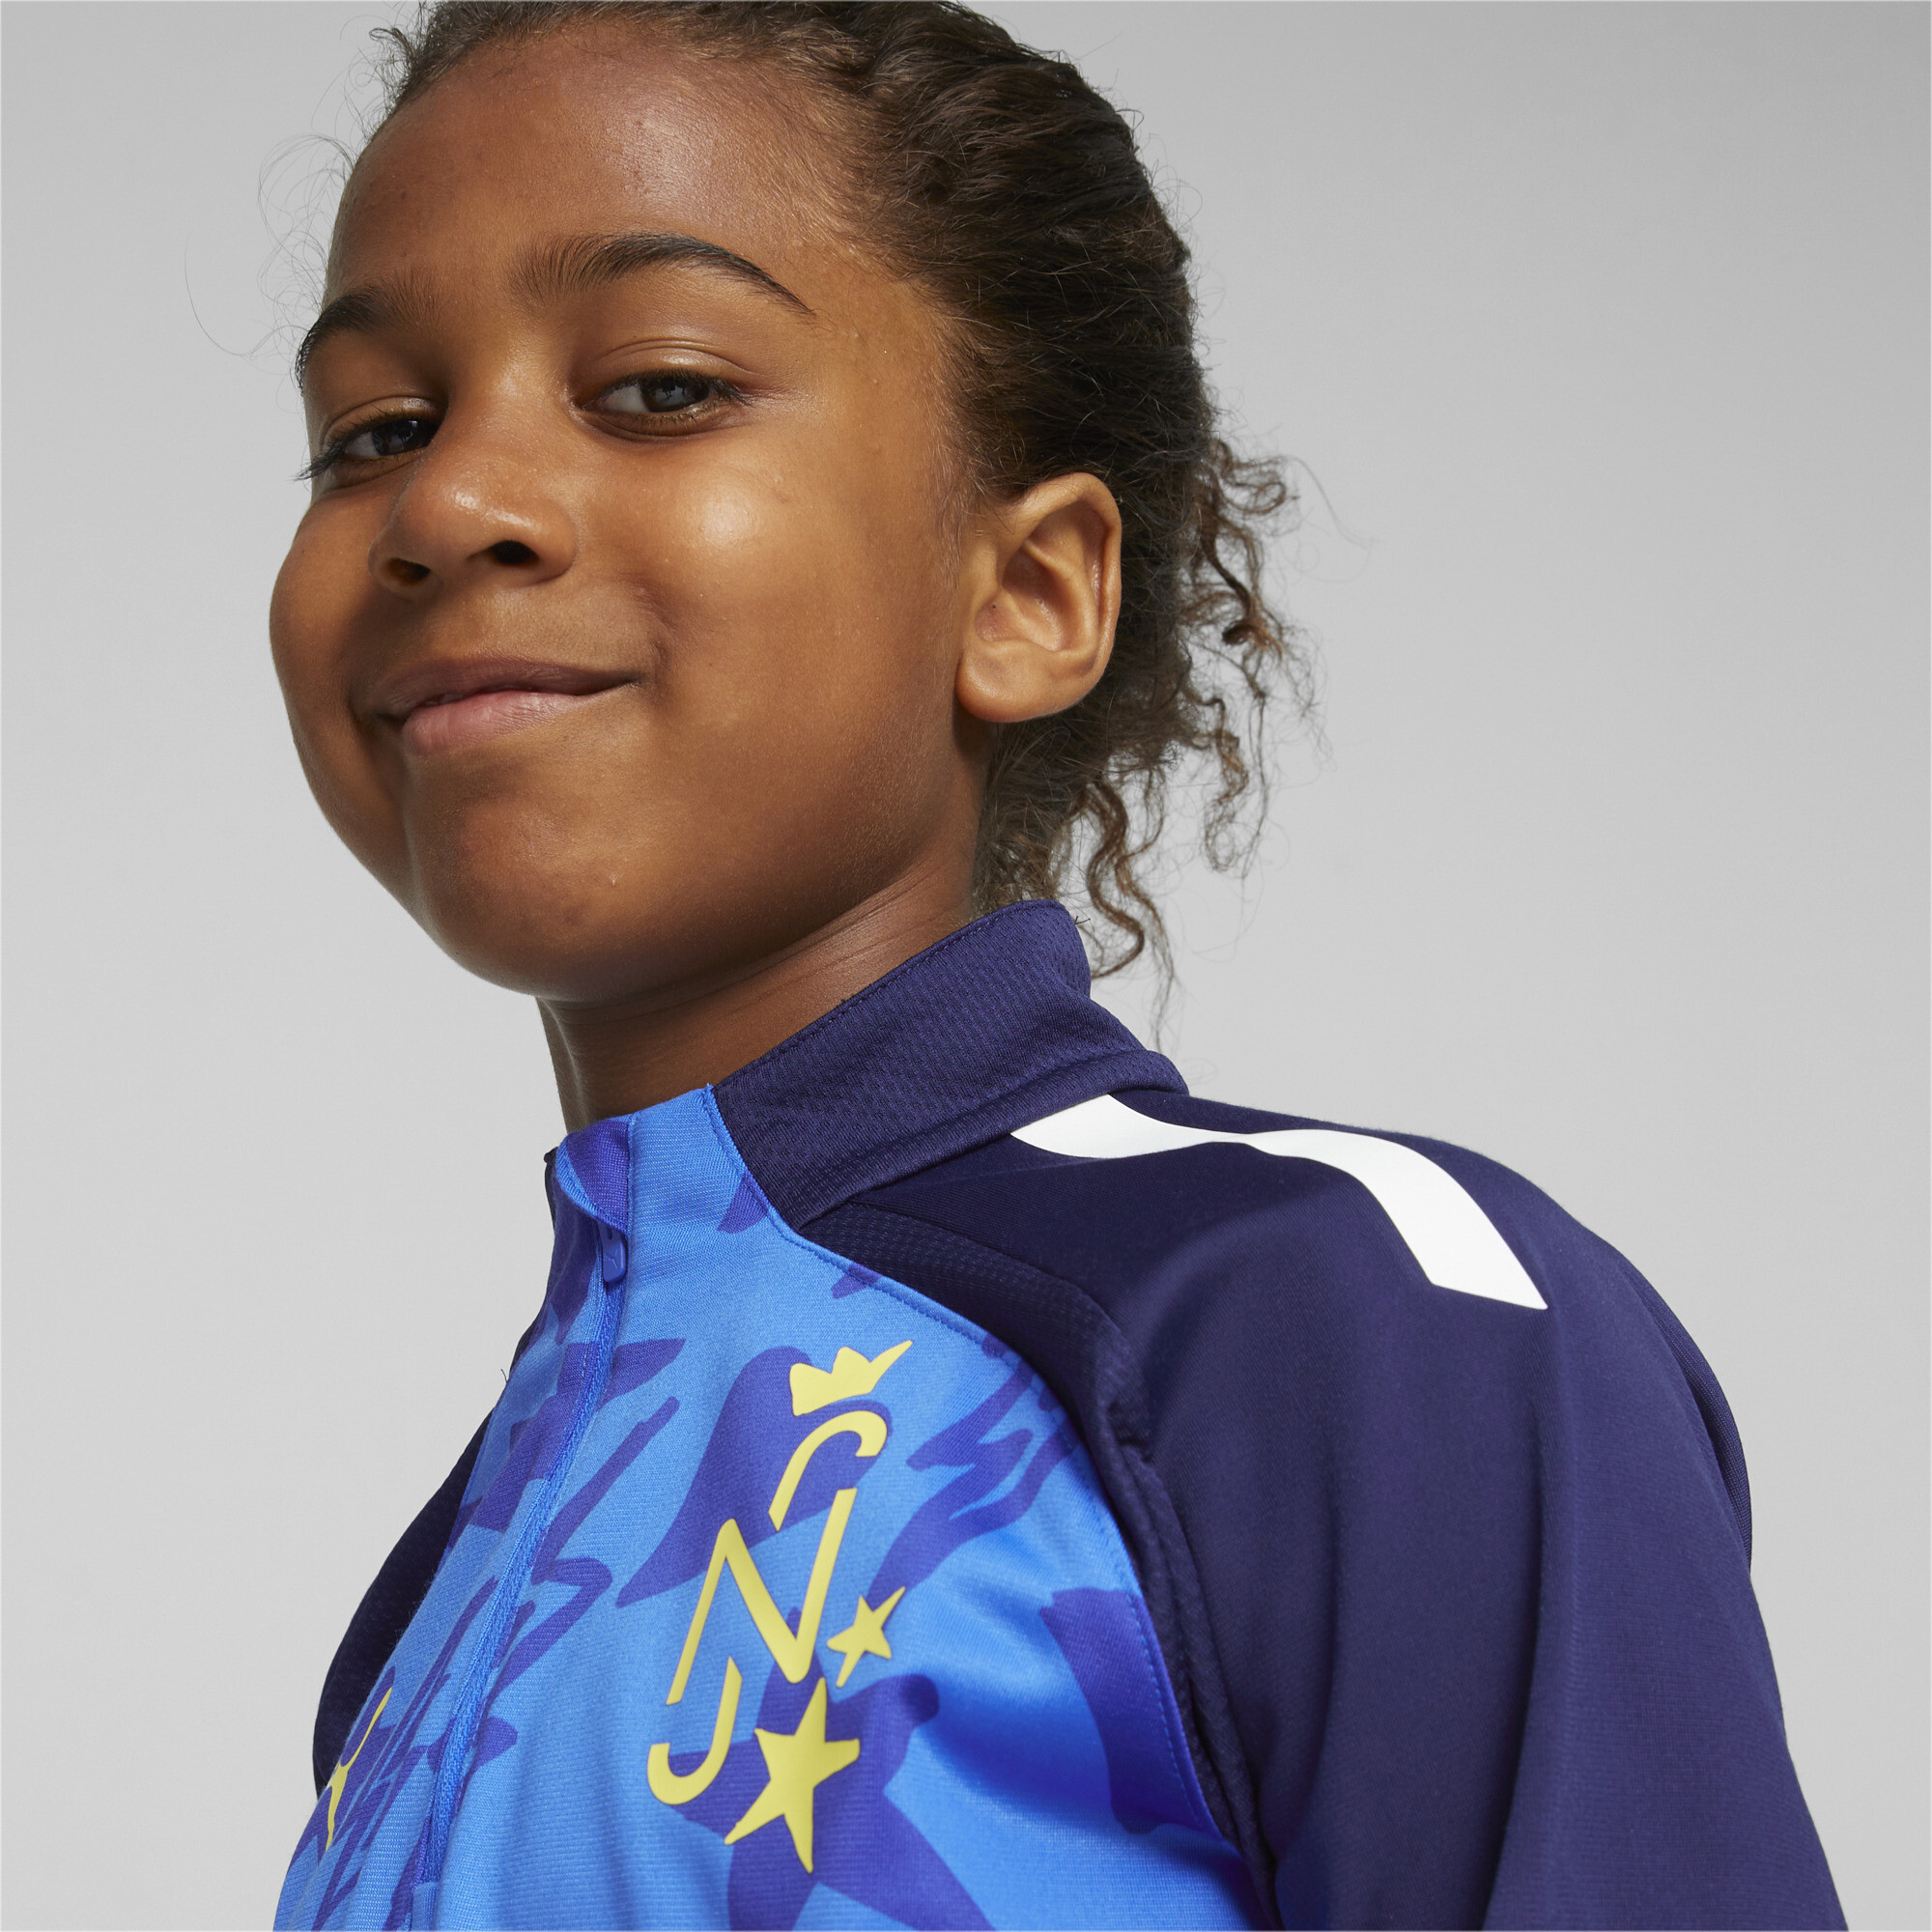 PUMA Neymar Jr Football Track Jacket In Blue, Size 13-14 Youth